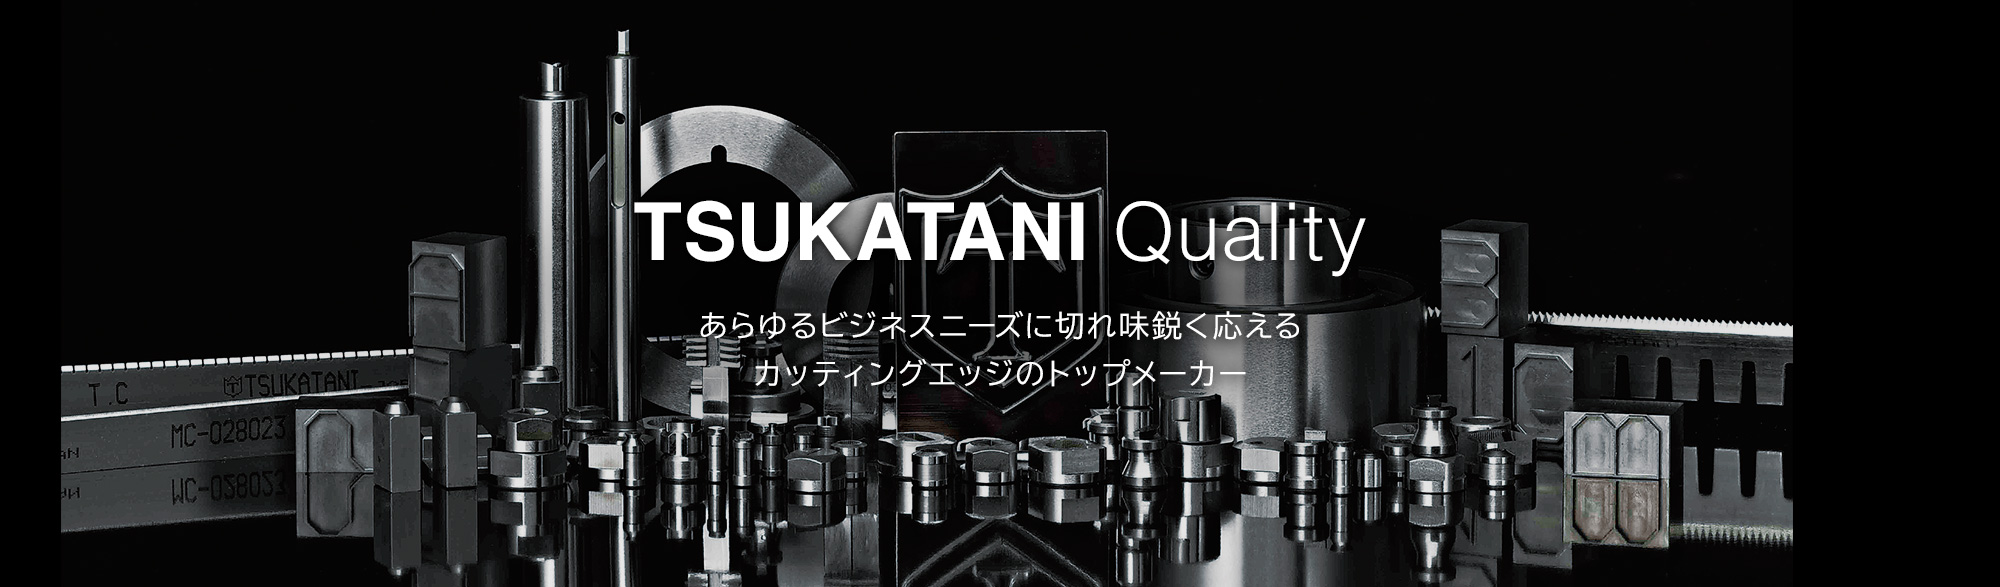 TSUKATANI Quality　あらゆるビジネスニーズに切れ味鋭く応えるカッティングエッジのトップメーカー